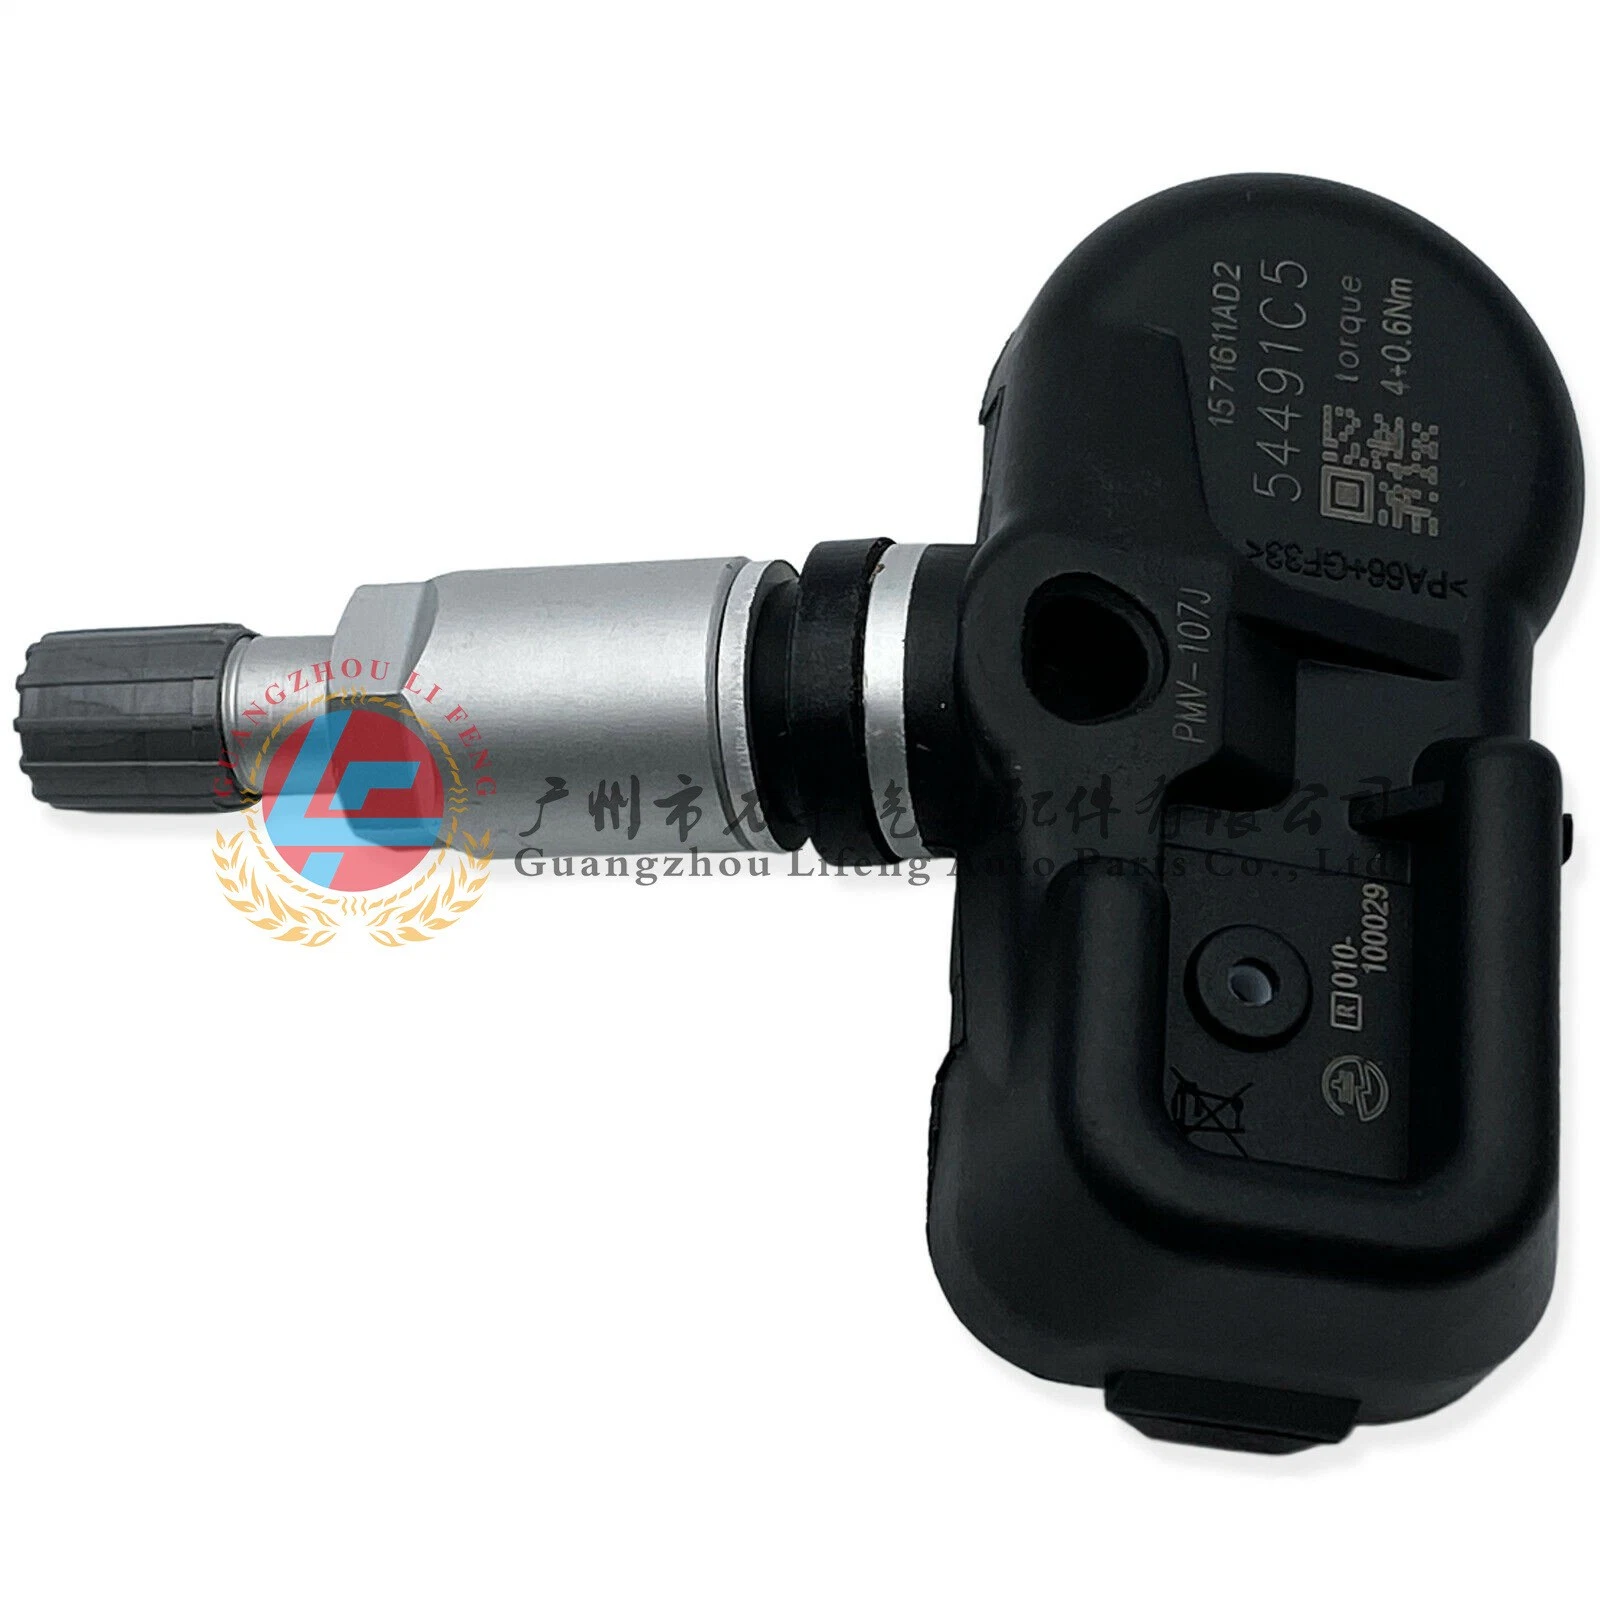 Sensor número de producto 42607-30040 PMV-C010 es adecuado para Camry Prado Y otros 4000 Monitoreo de presión de ruedas sensor de presión de neumáticos de automóvil